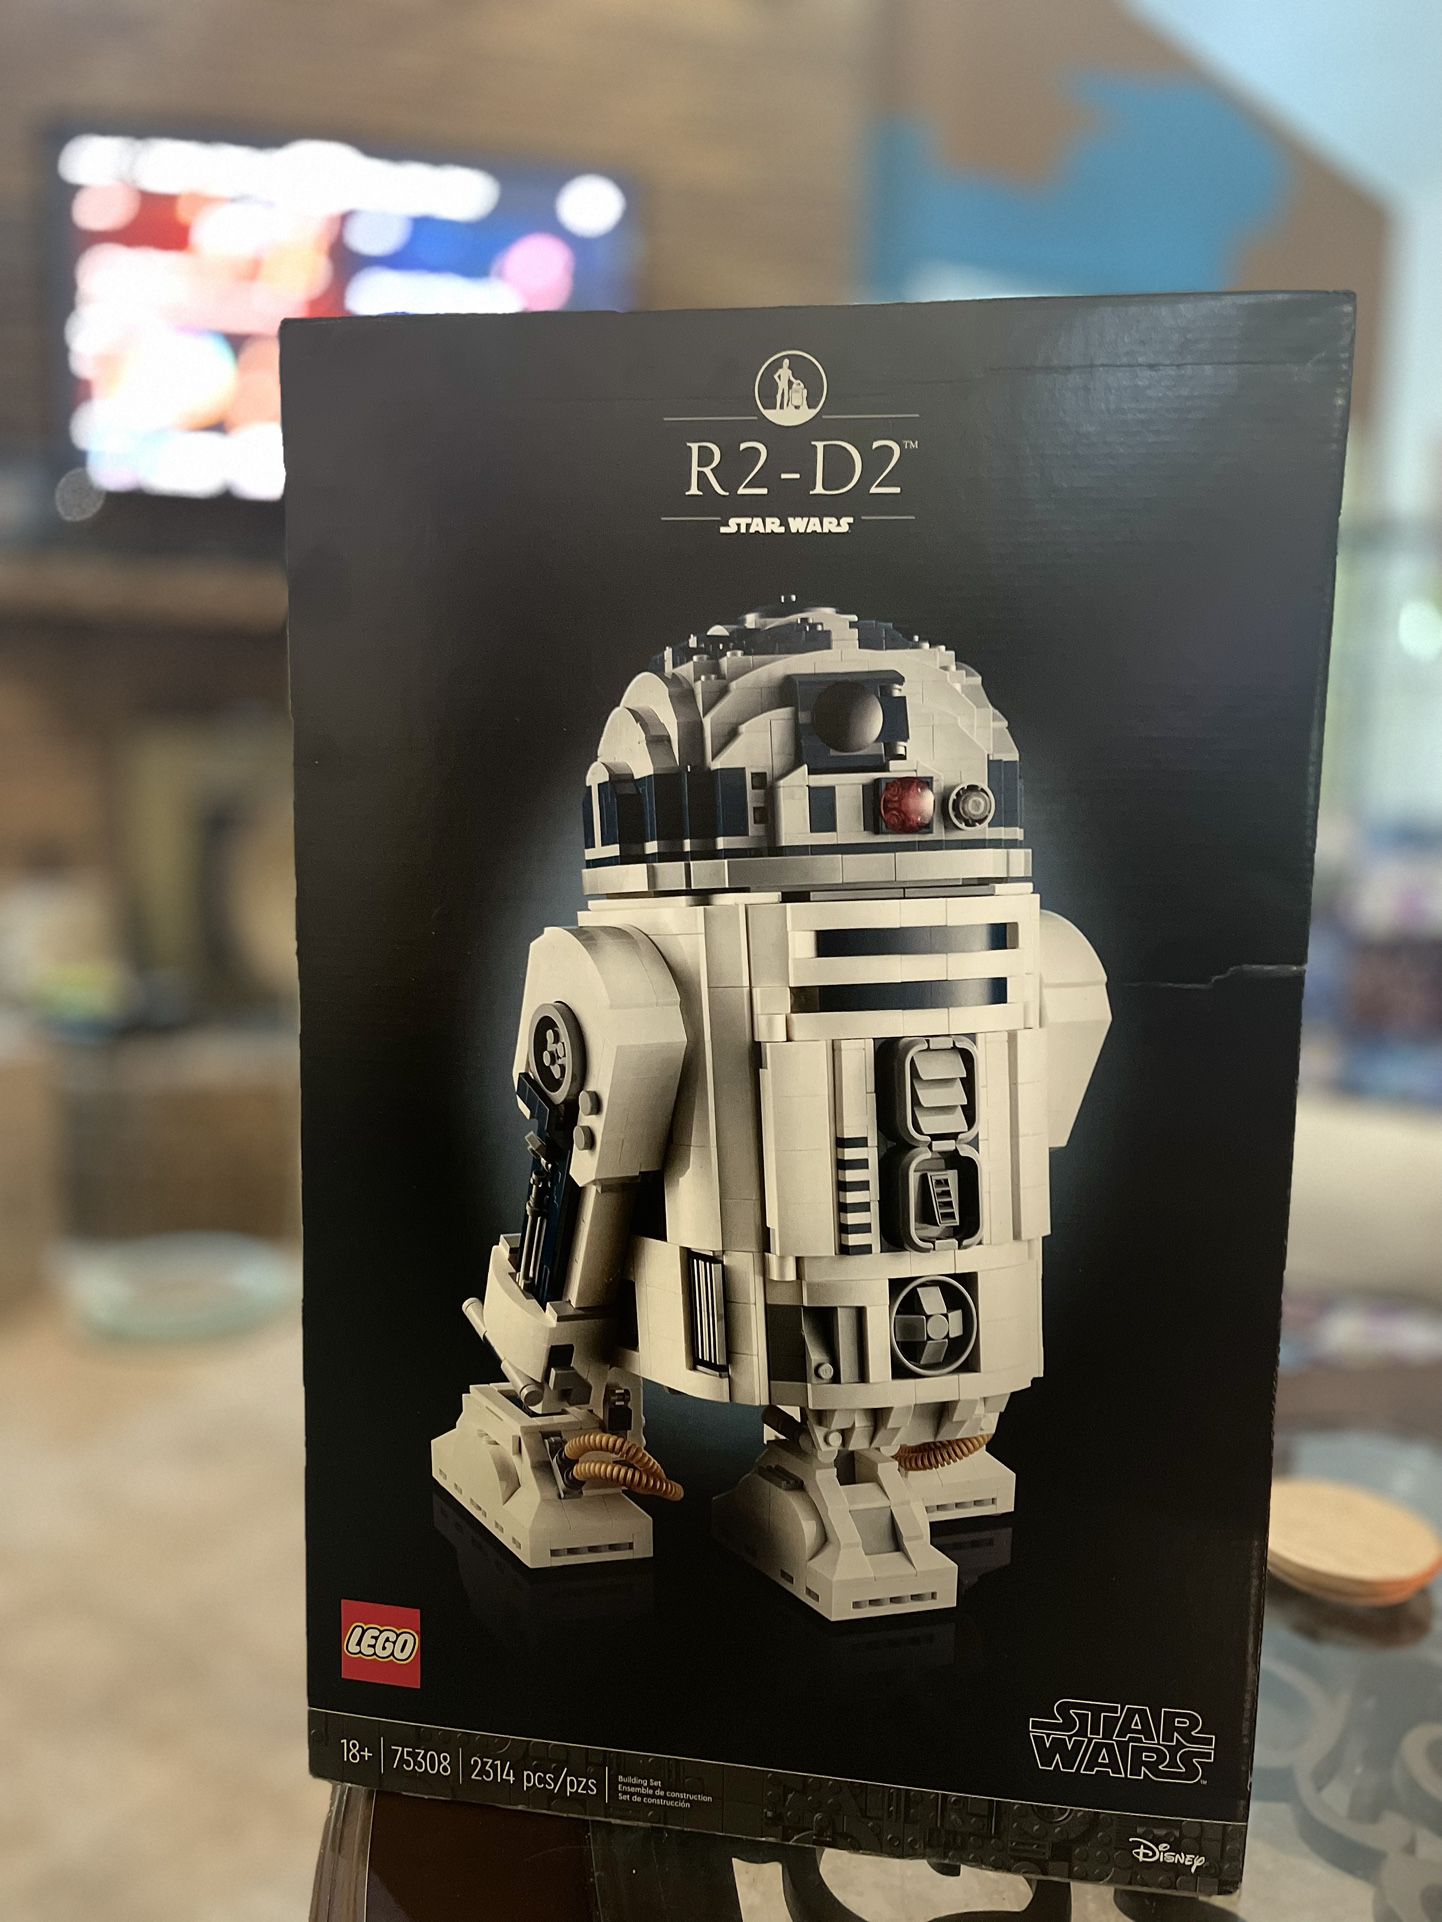 Star Wars R2-D2 LEGO Set